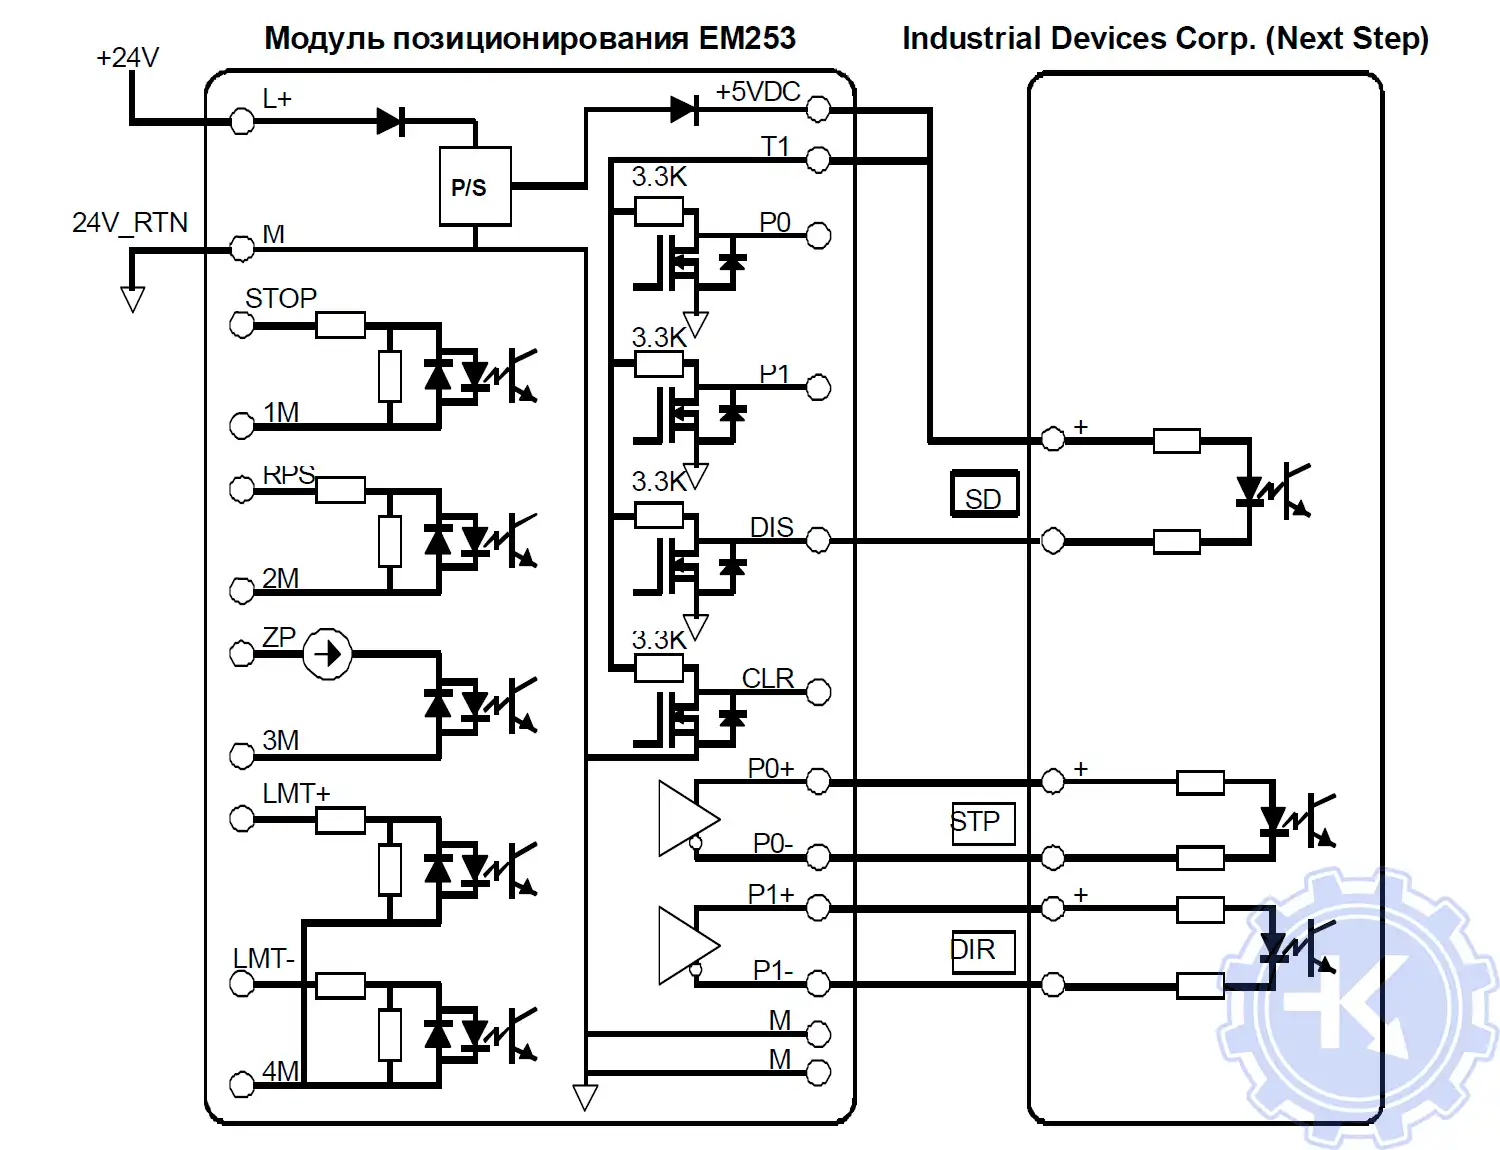 Схема подключения модуля позиционирования EM 253 к Industrial Devices Corp. (Next Step)